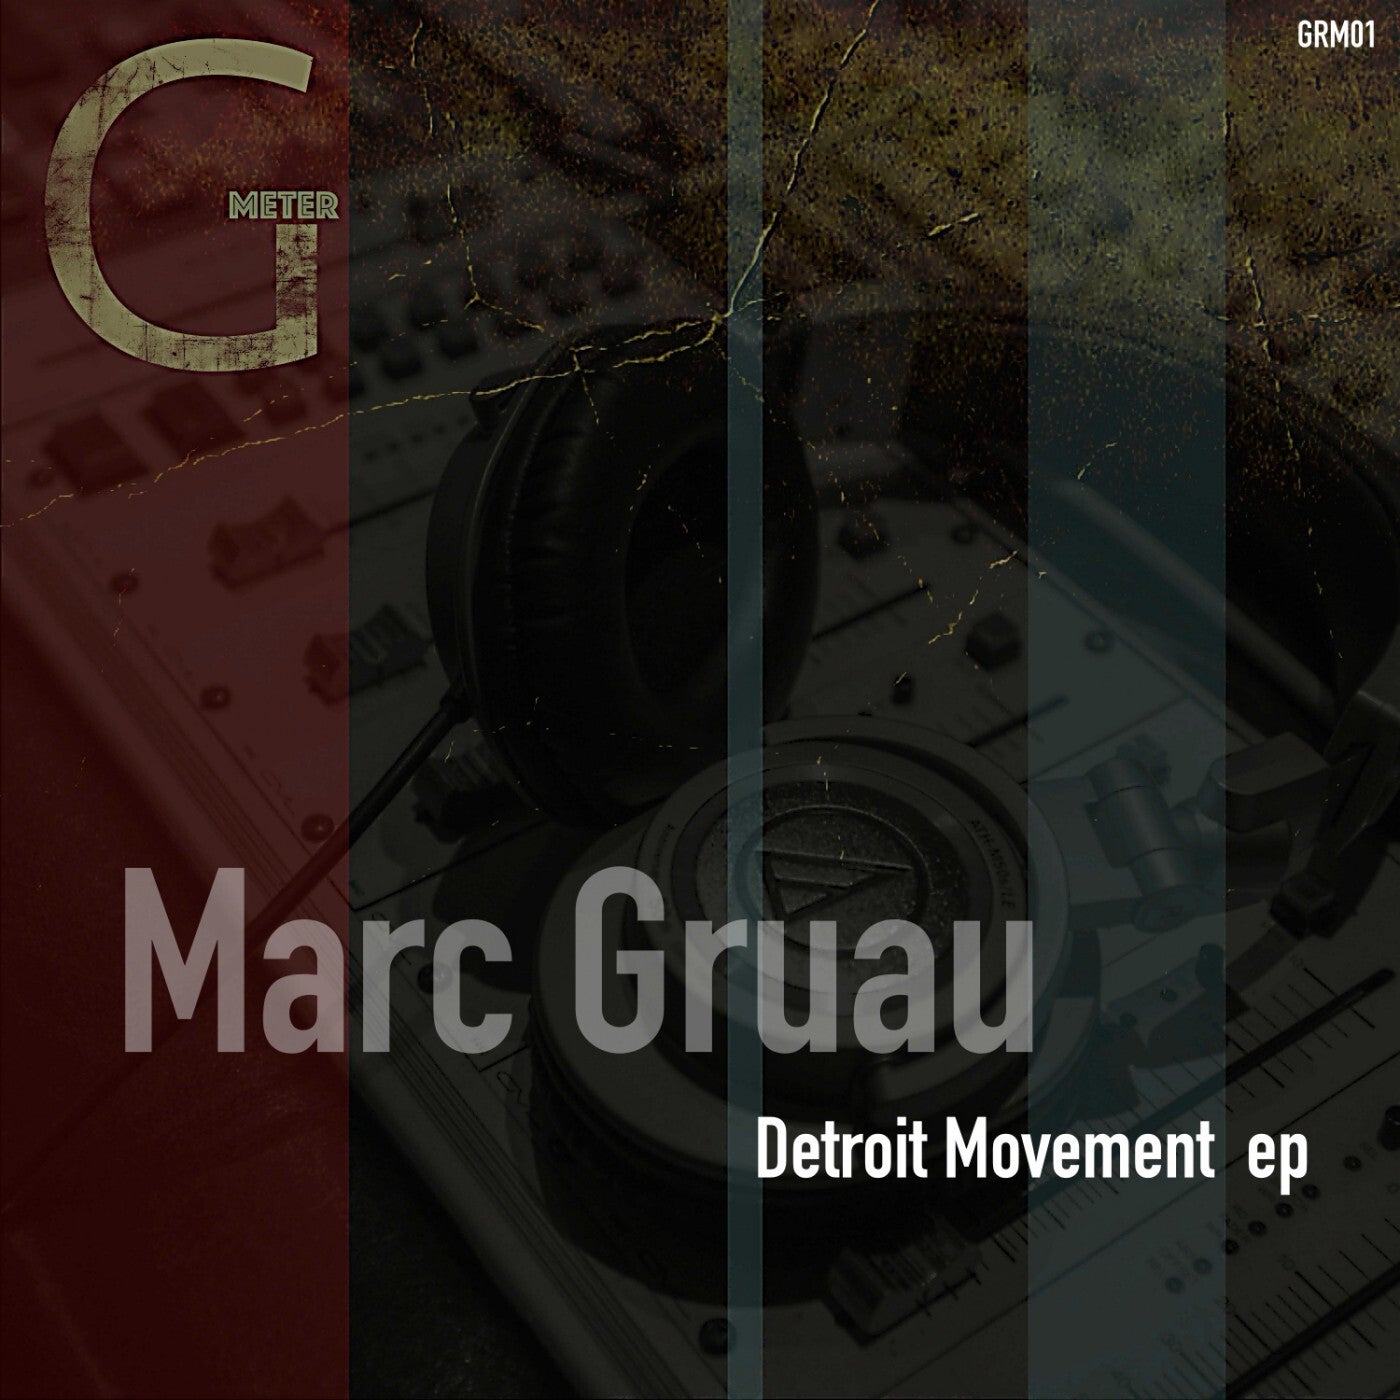 Detroit Movement ep